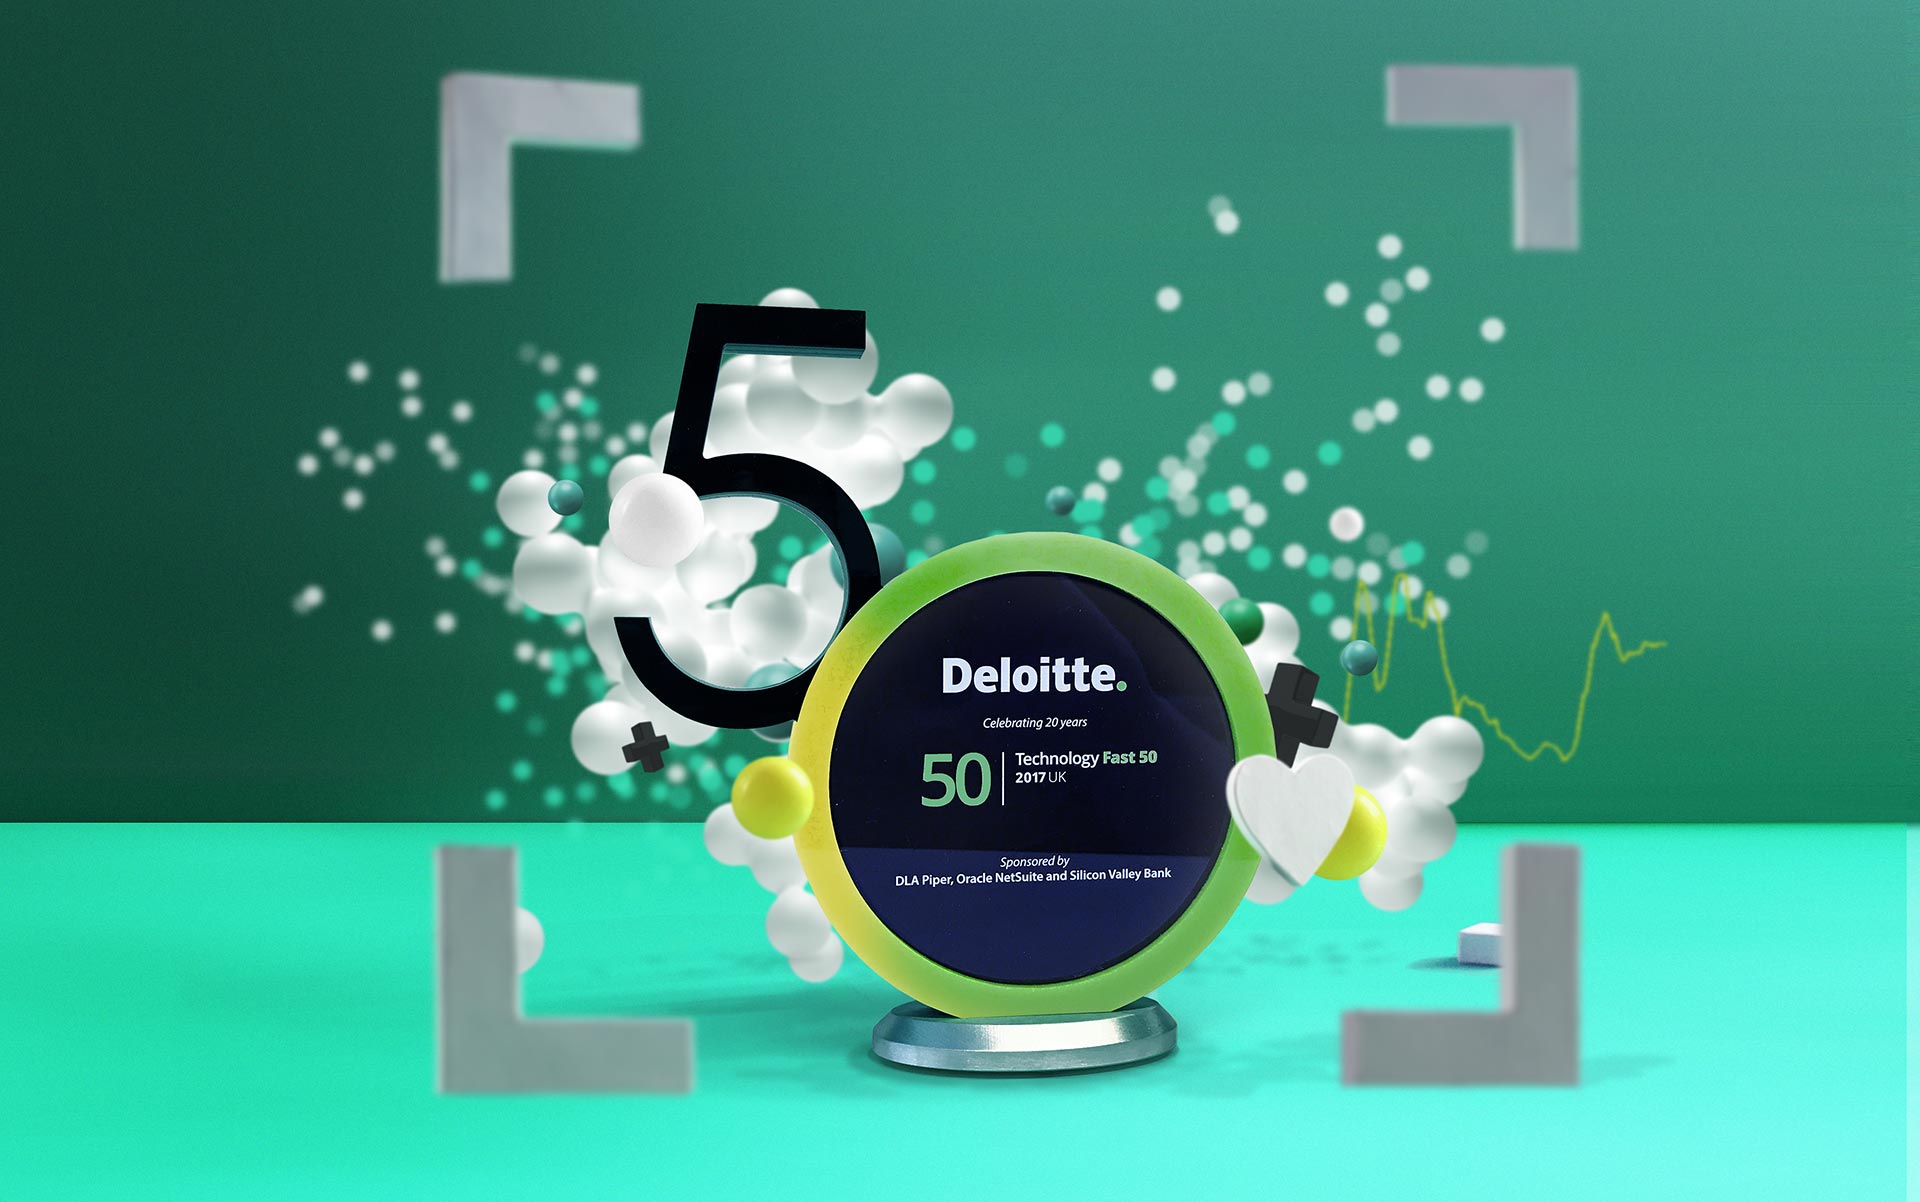 Deloitte Tech Fast50 